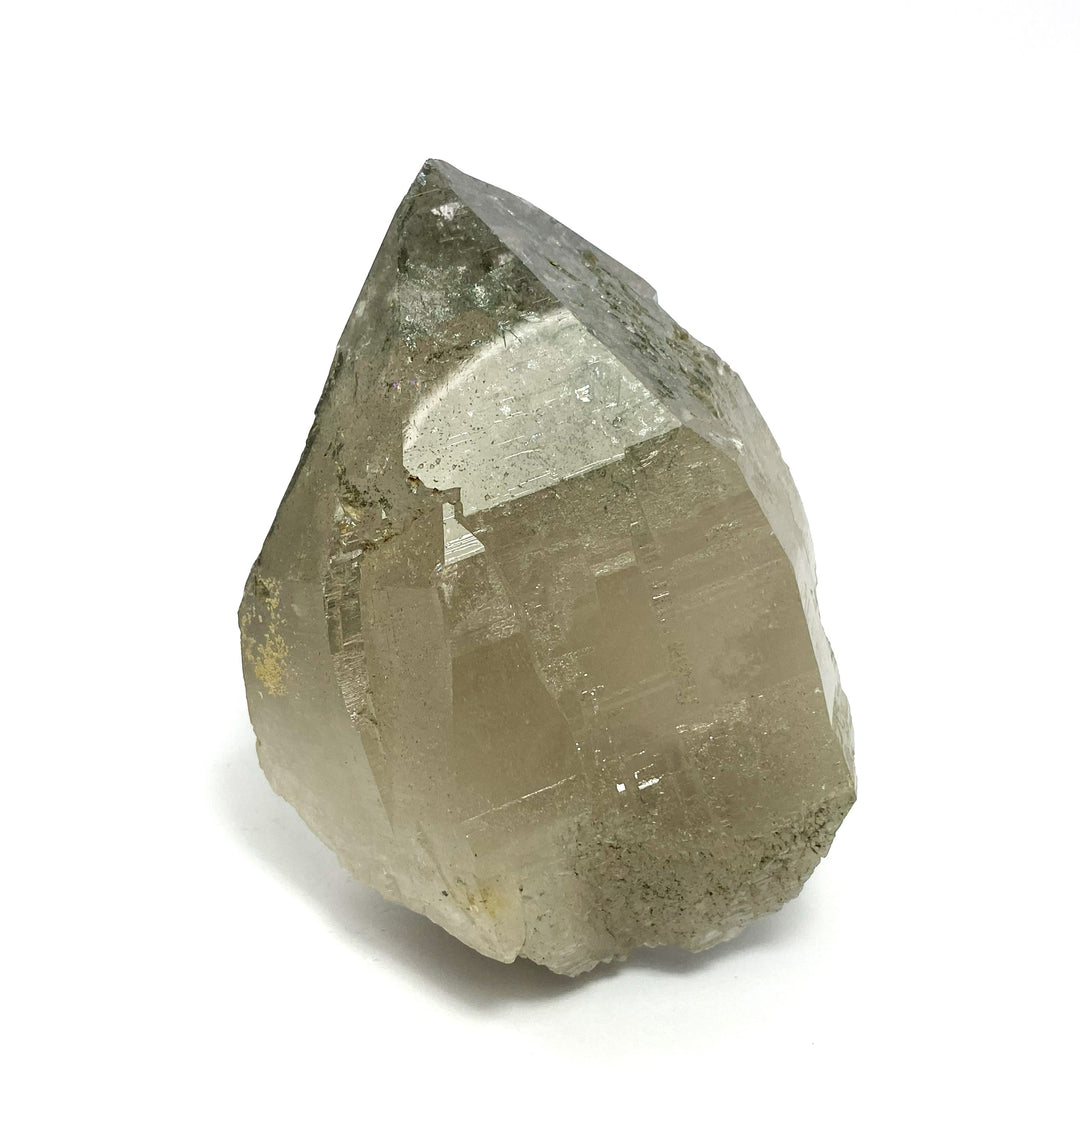 Bergkristall, Chlorit, Schobereisig, Ankogel-Gruppe, Kärnten, Österreich